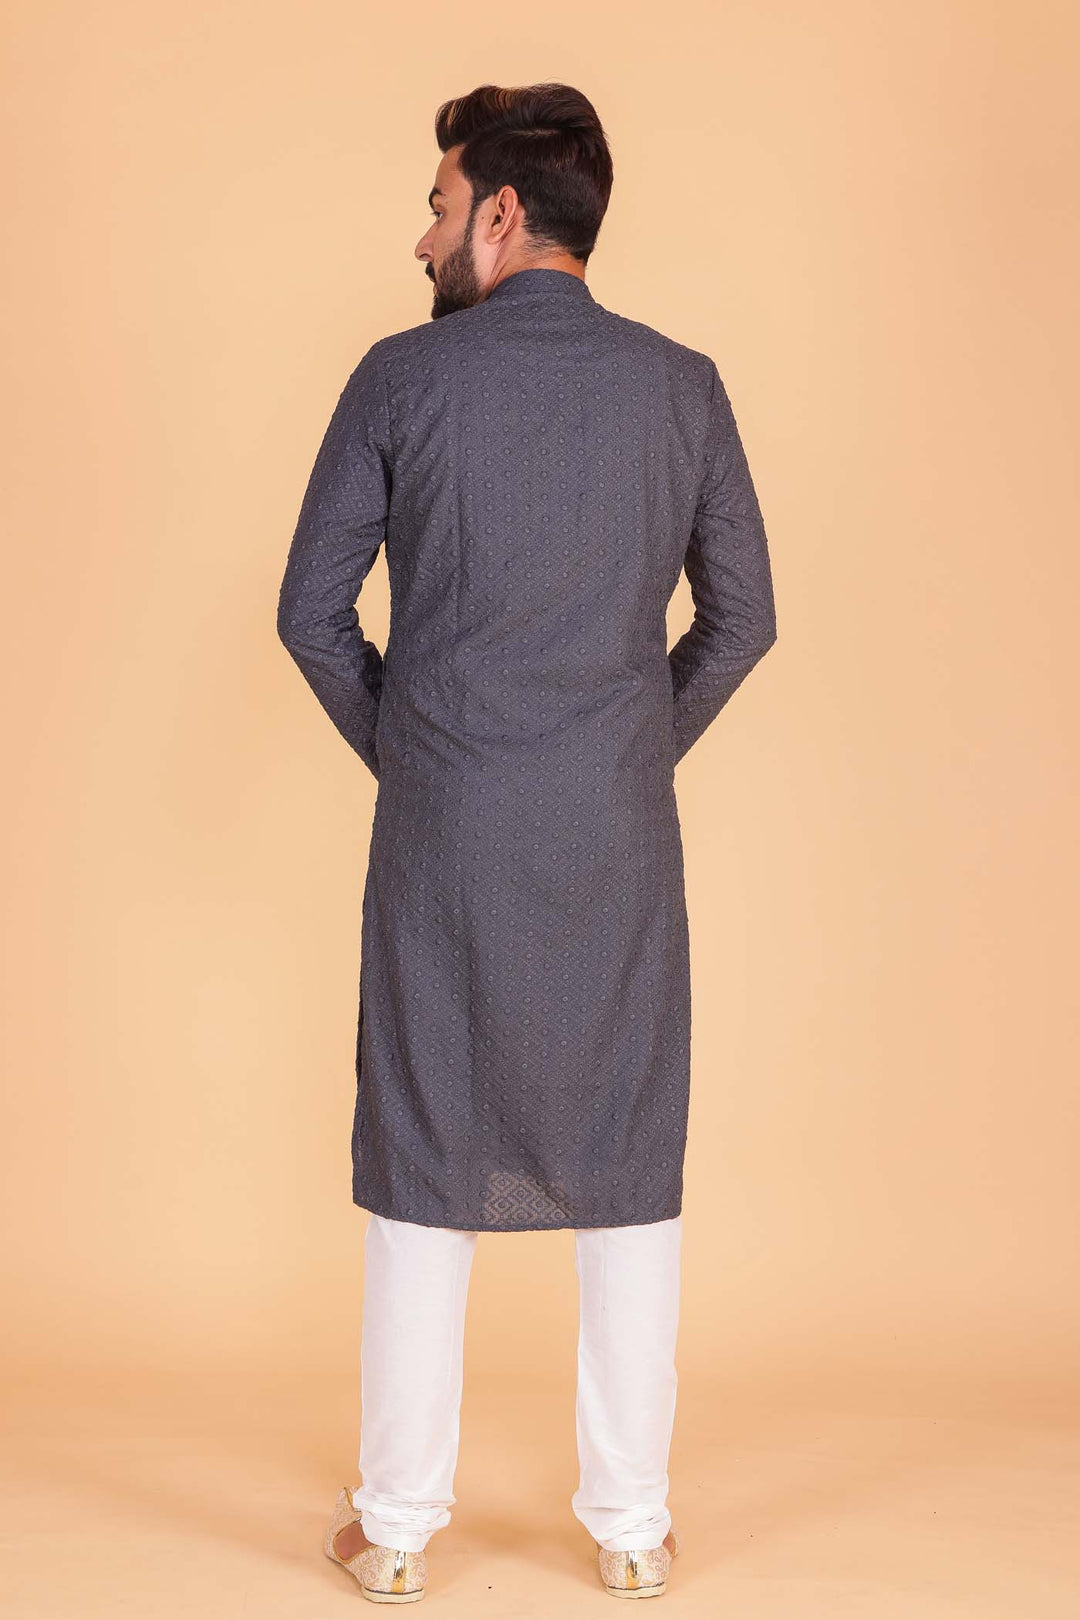 Designer Luckhnowi kurta suit with resham thread work all over- Grey